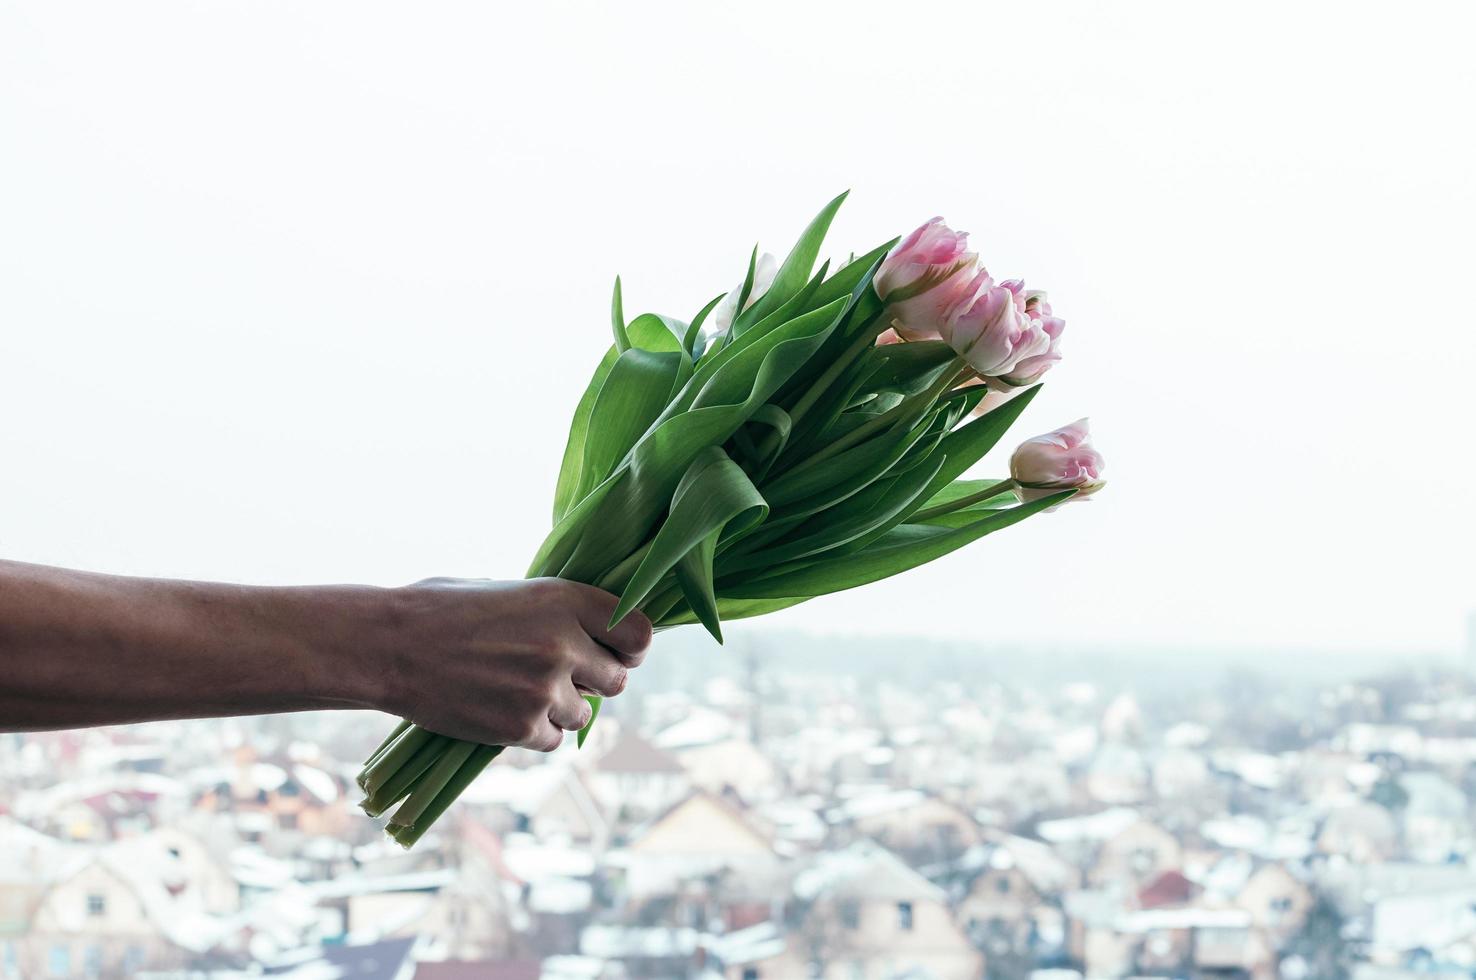 fiori di tulipano in mano dell'uomo contro lo sfondo sfocato urbano, vista dalla collina foto